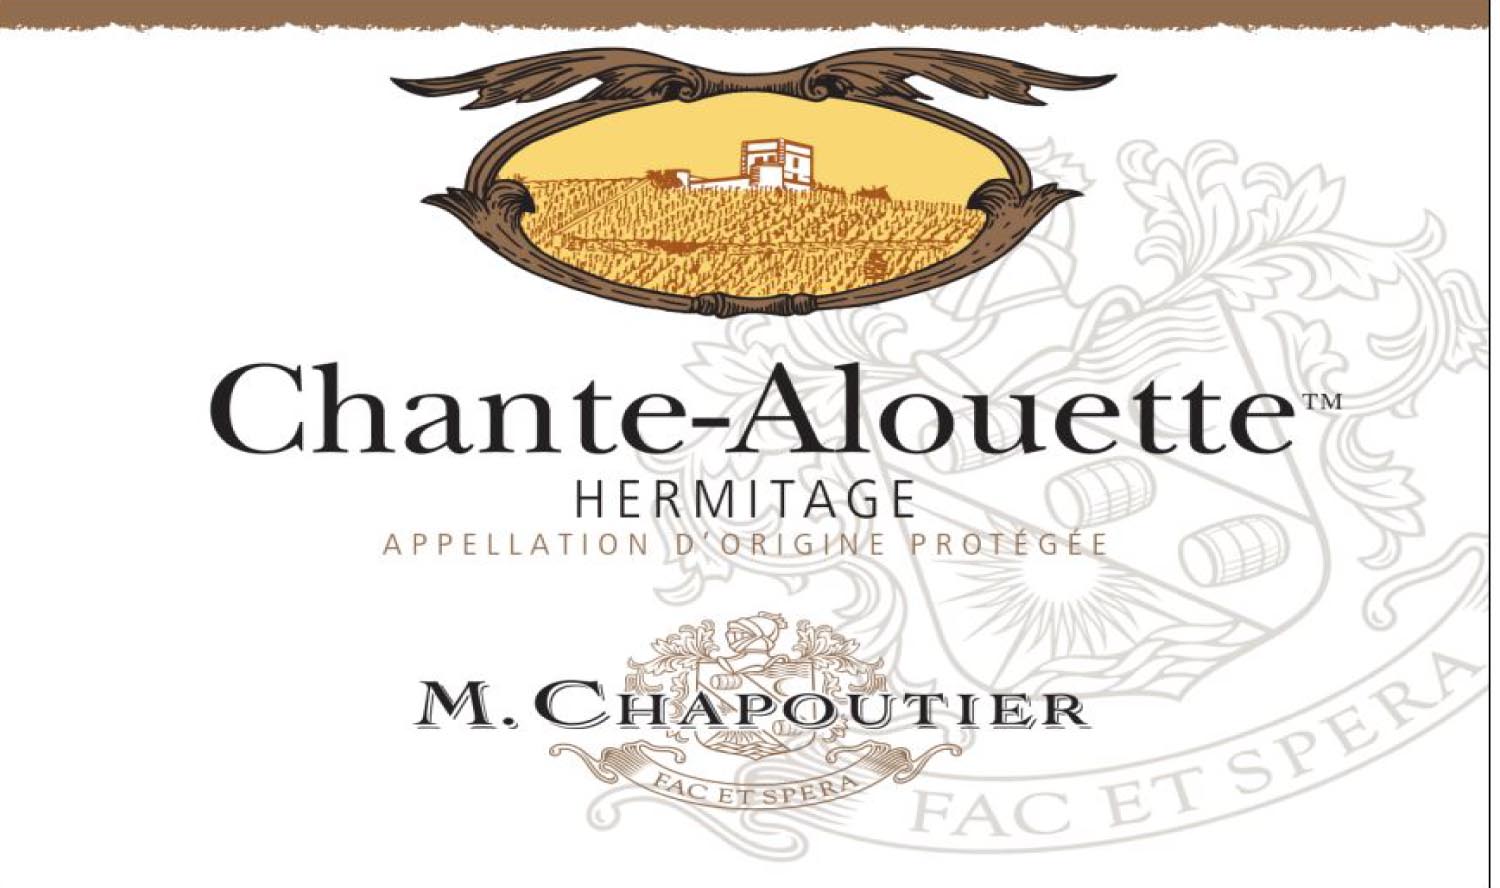 M. Chapoutier - Chante-Alouette Blanc label